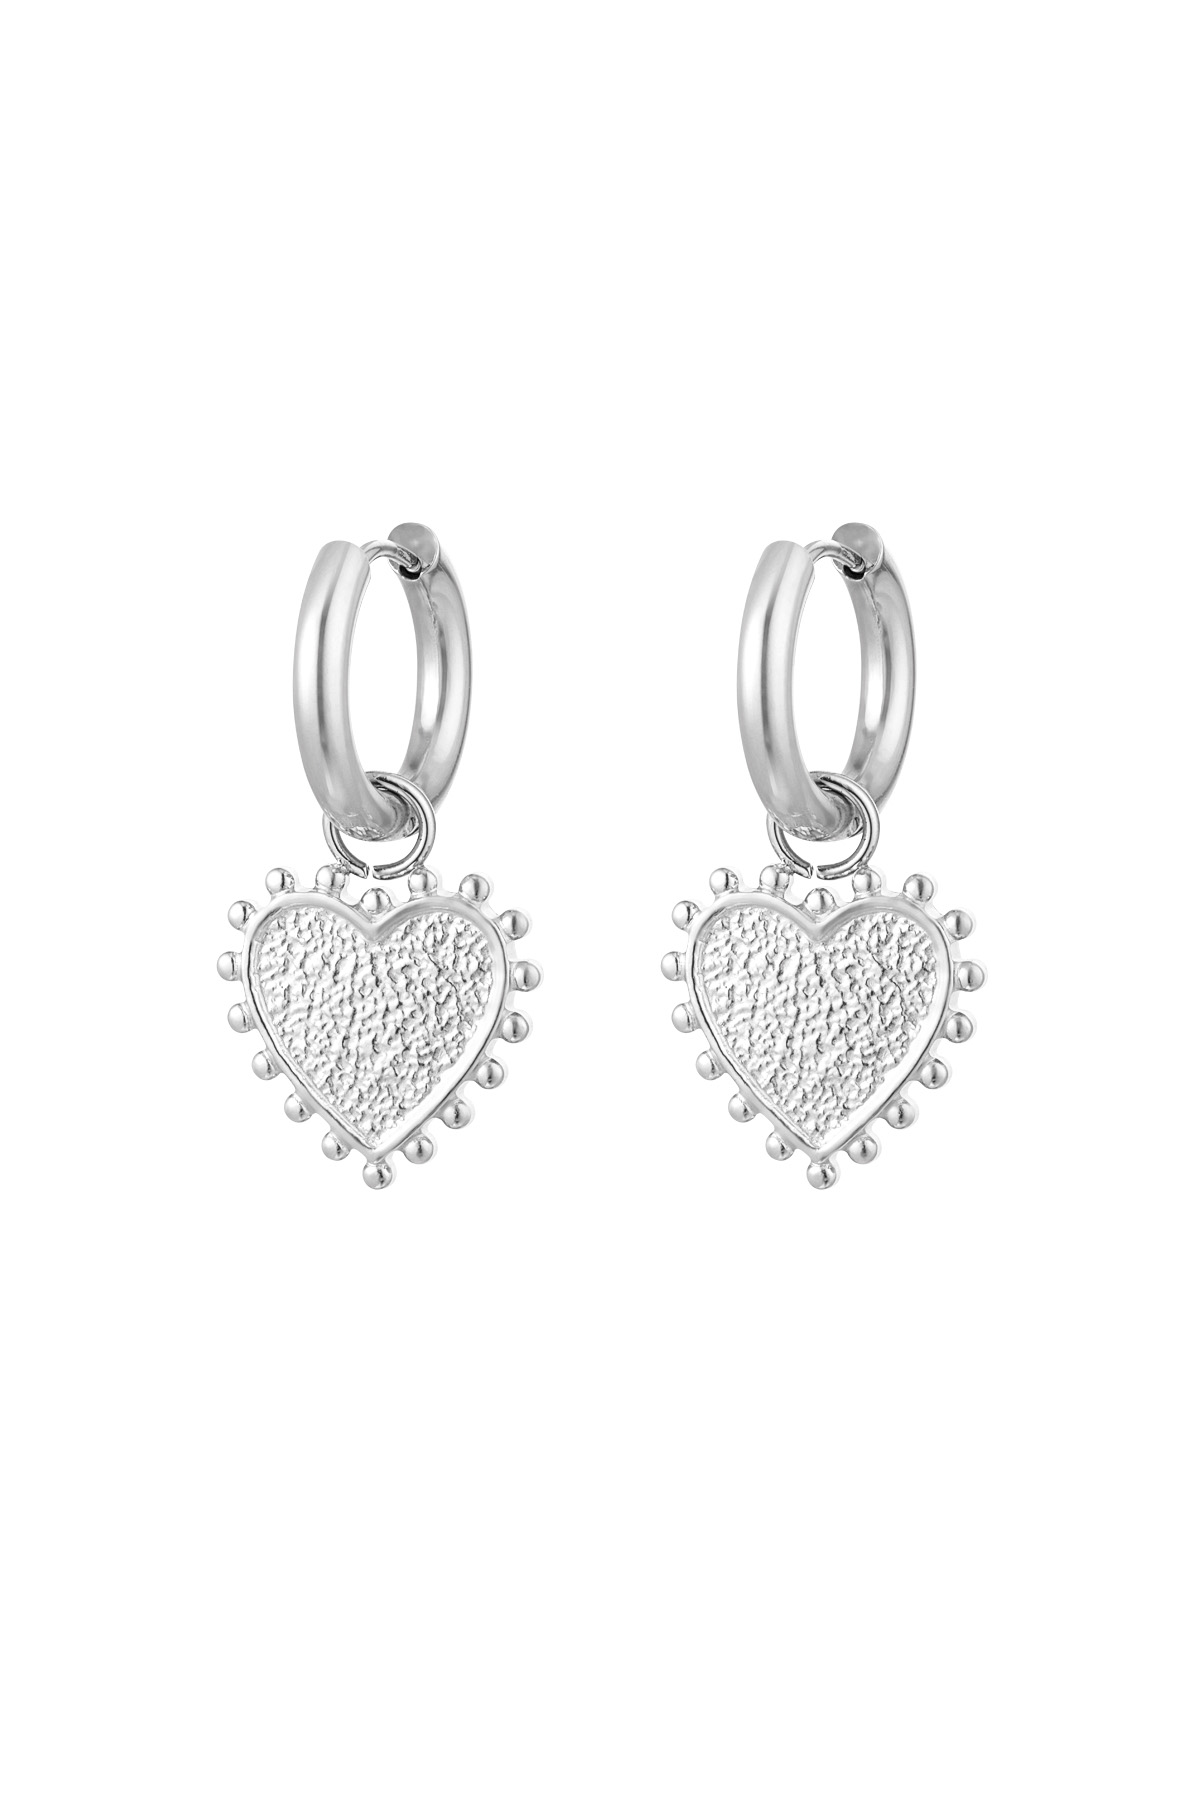 Kalp şeklinde dekore edilmiş küpeler - gümüş h5 